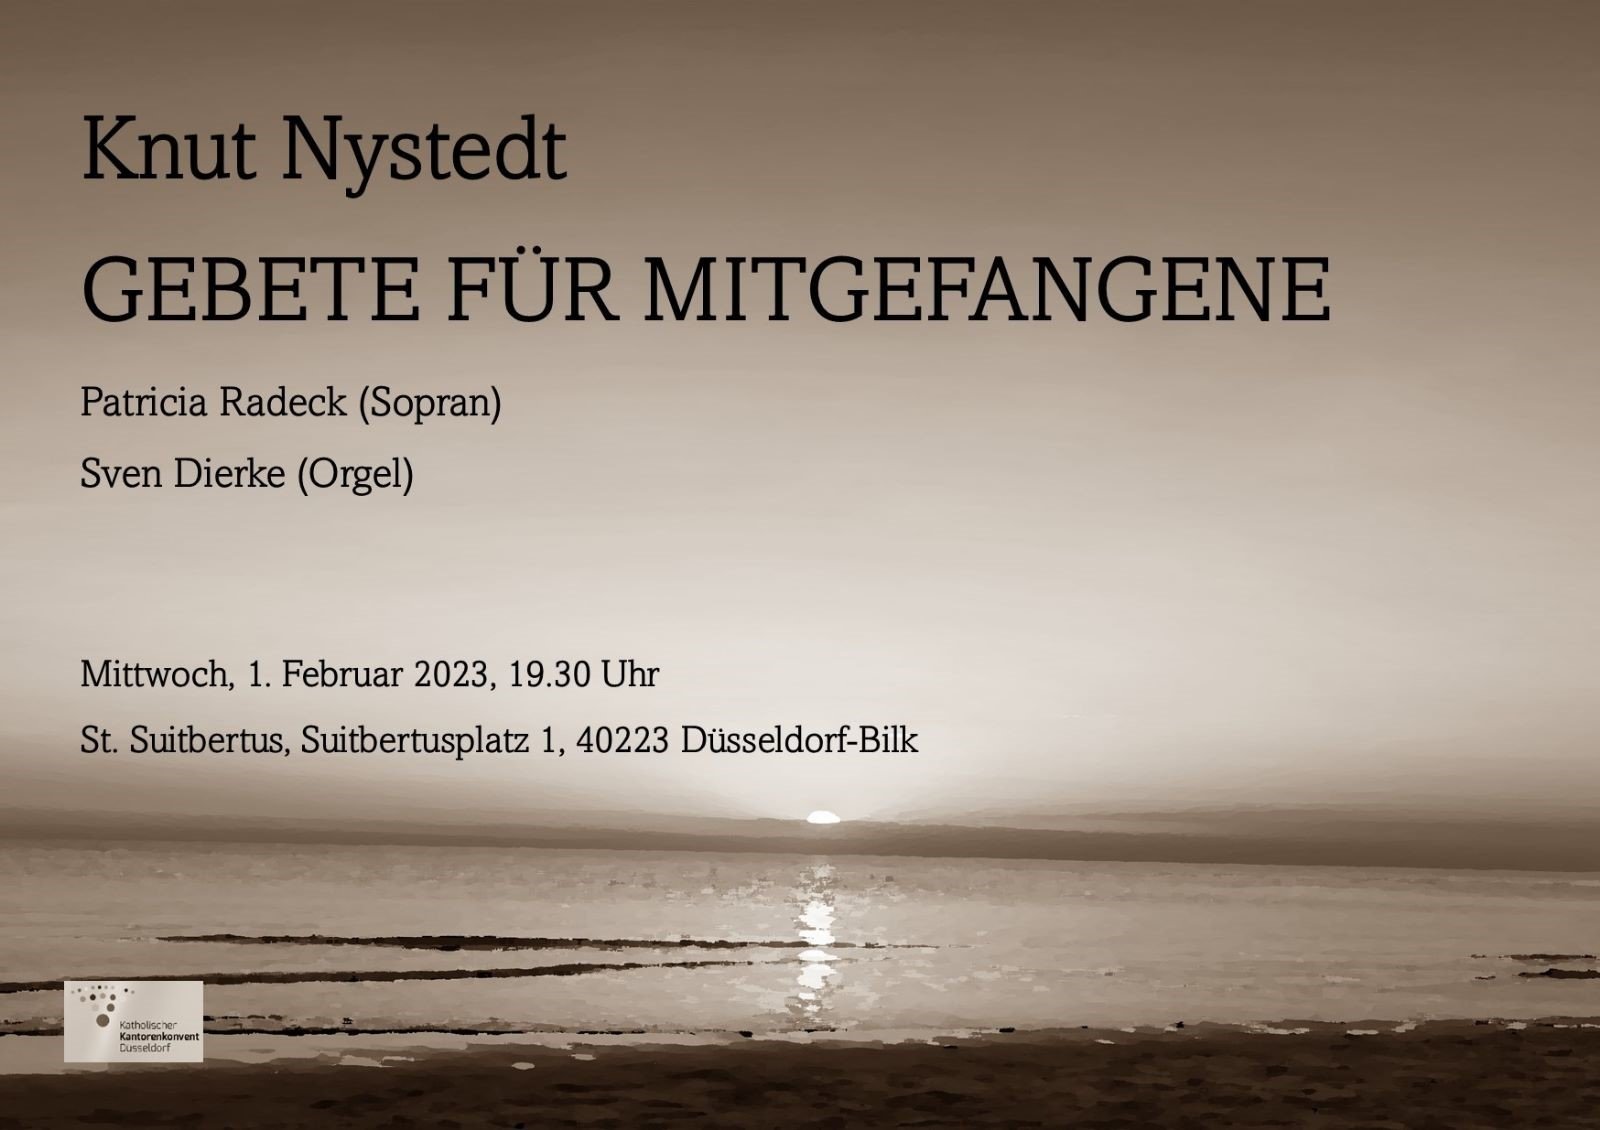 Gebete für Mitgefangene - Kurt Nystedt 1.2.23 St. Suitbertus